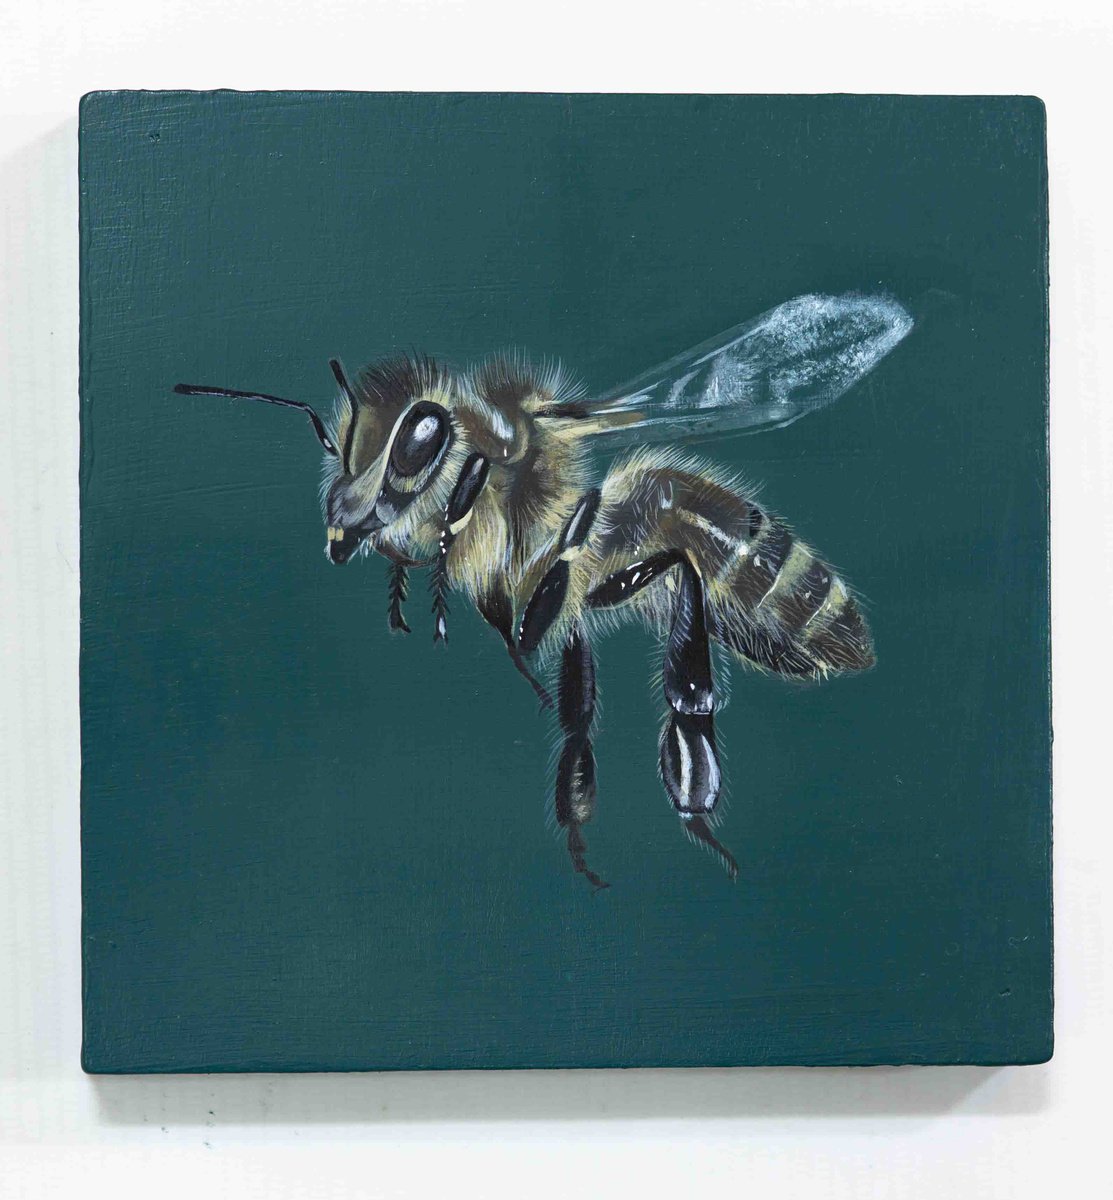 Honey Bee by Mia Hawk